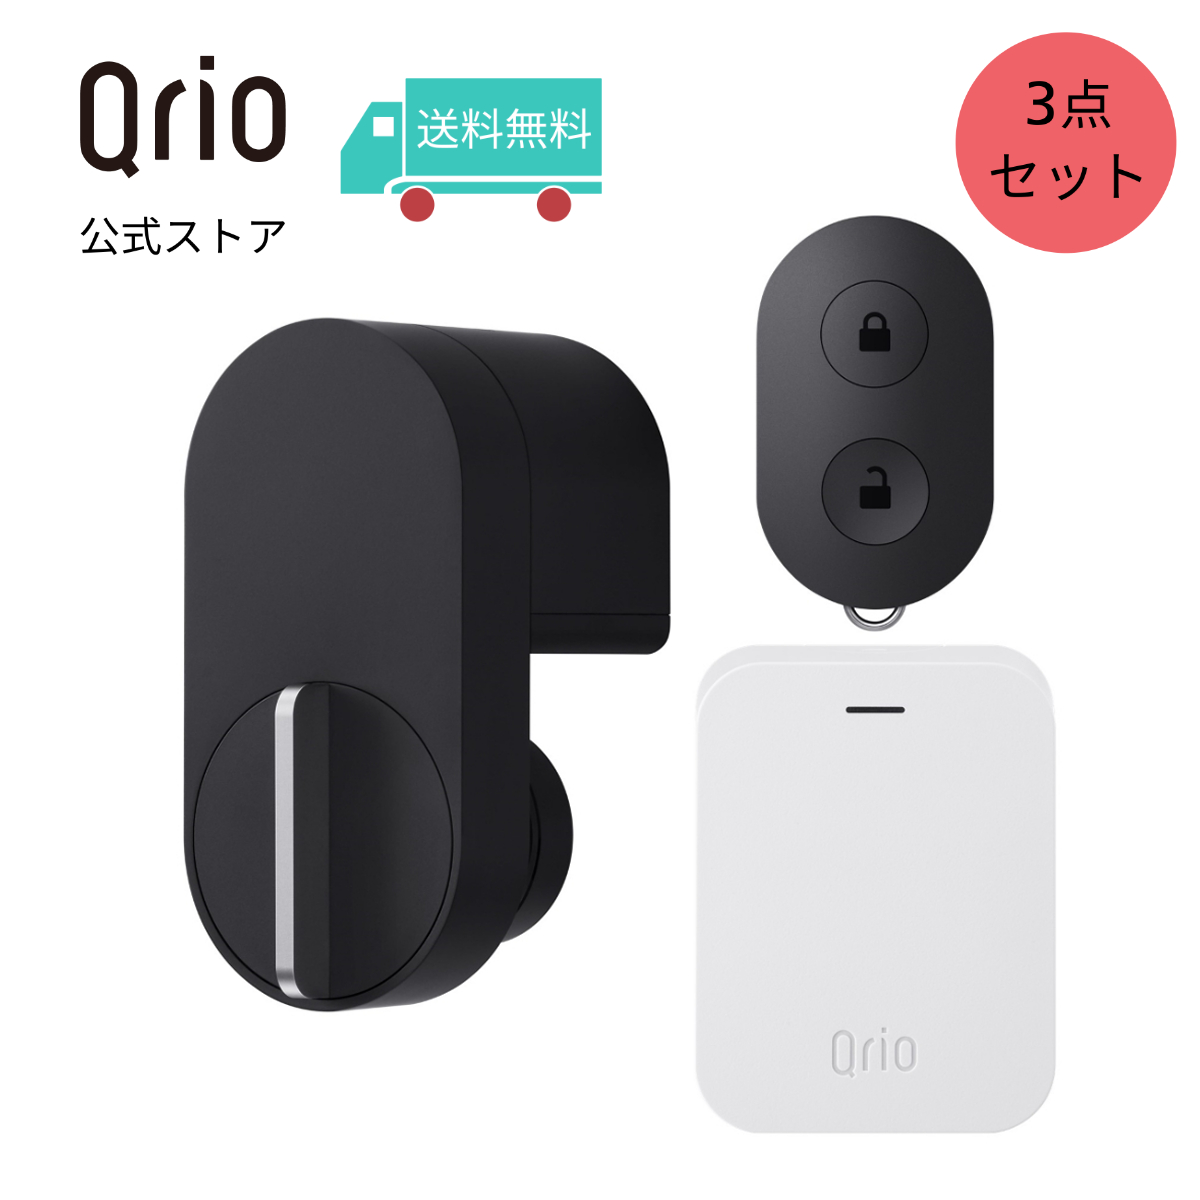 【楽天市場】【Qrio 公式】Qrio Key S ソニーグループ キュリオキー 